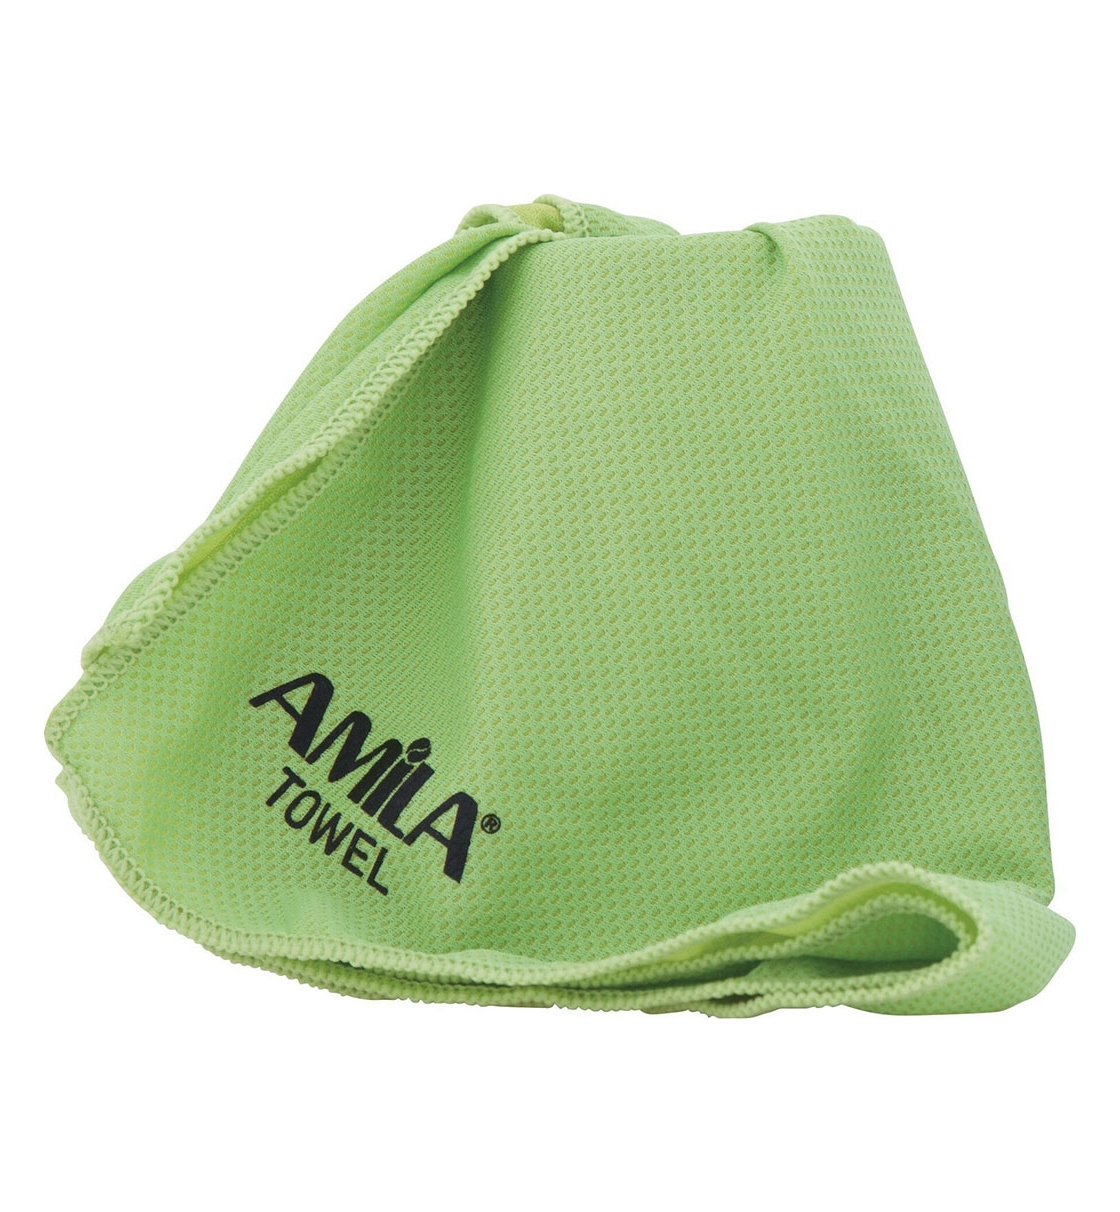 Amila Πετσέτα Γυμναστηρίου Fw21 Πετσετα "Cool Towel" Πρασινη 30X100Cm 96901